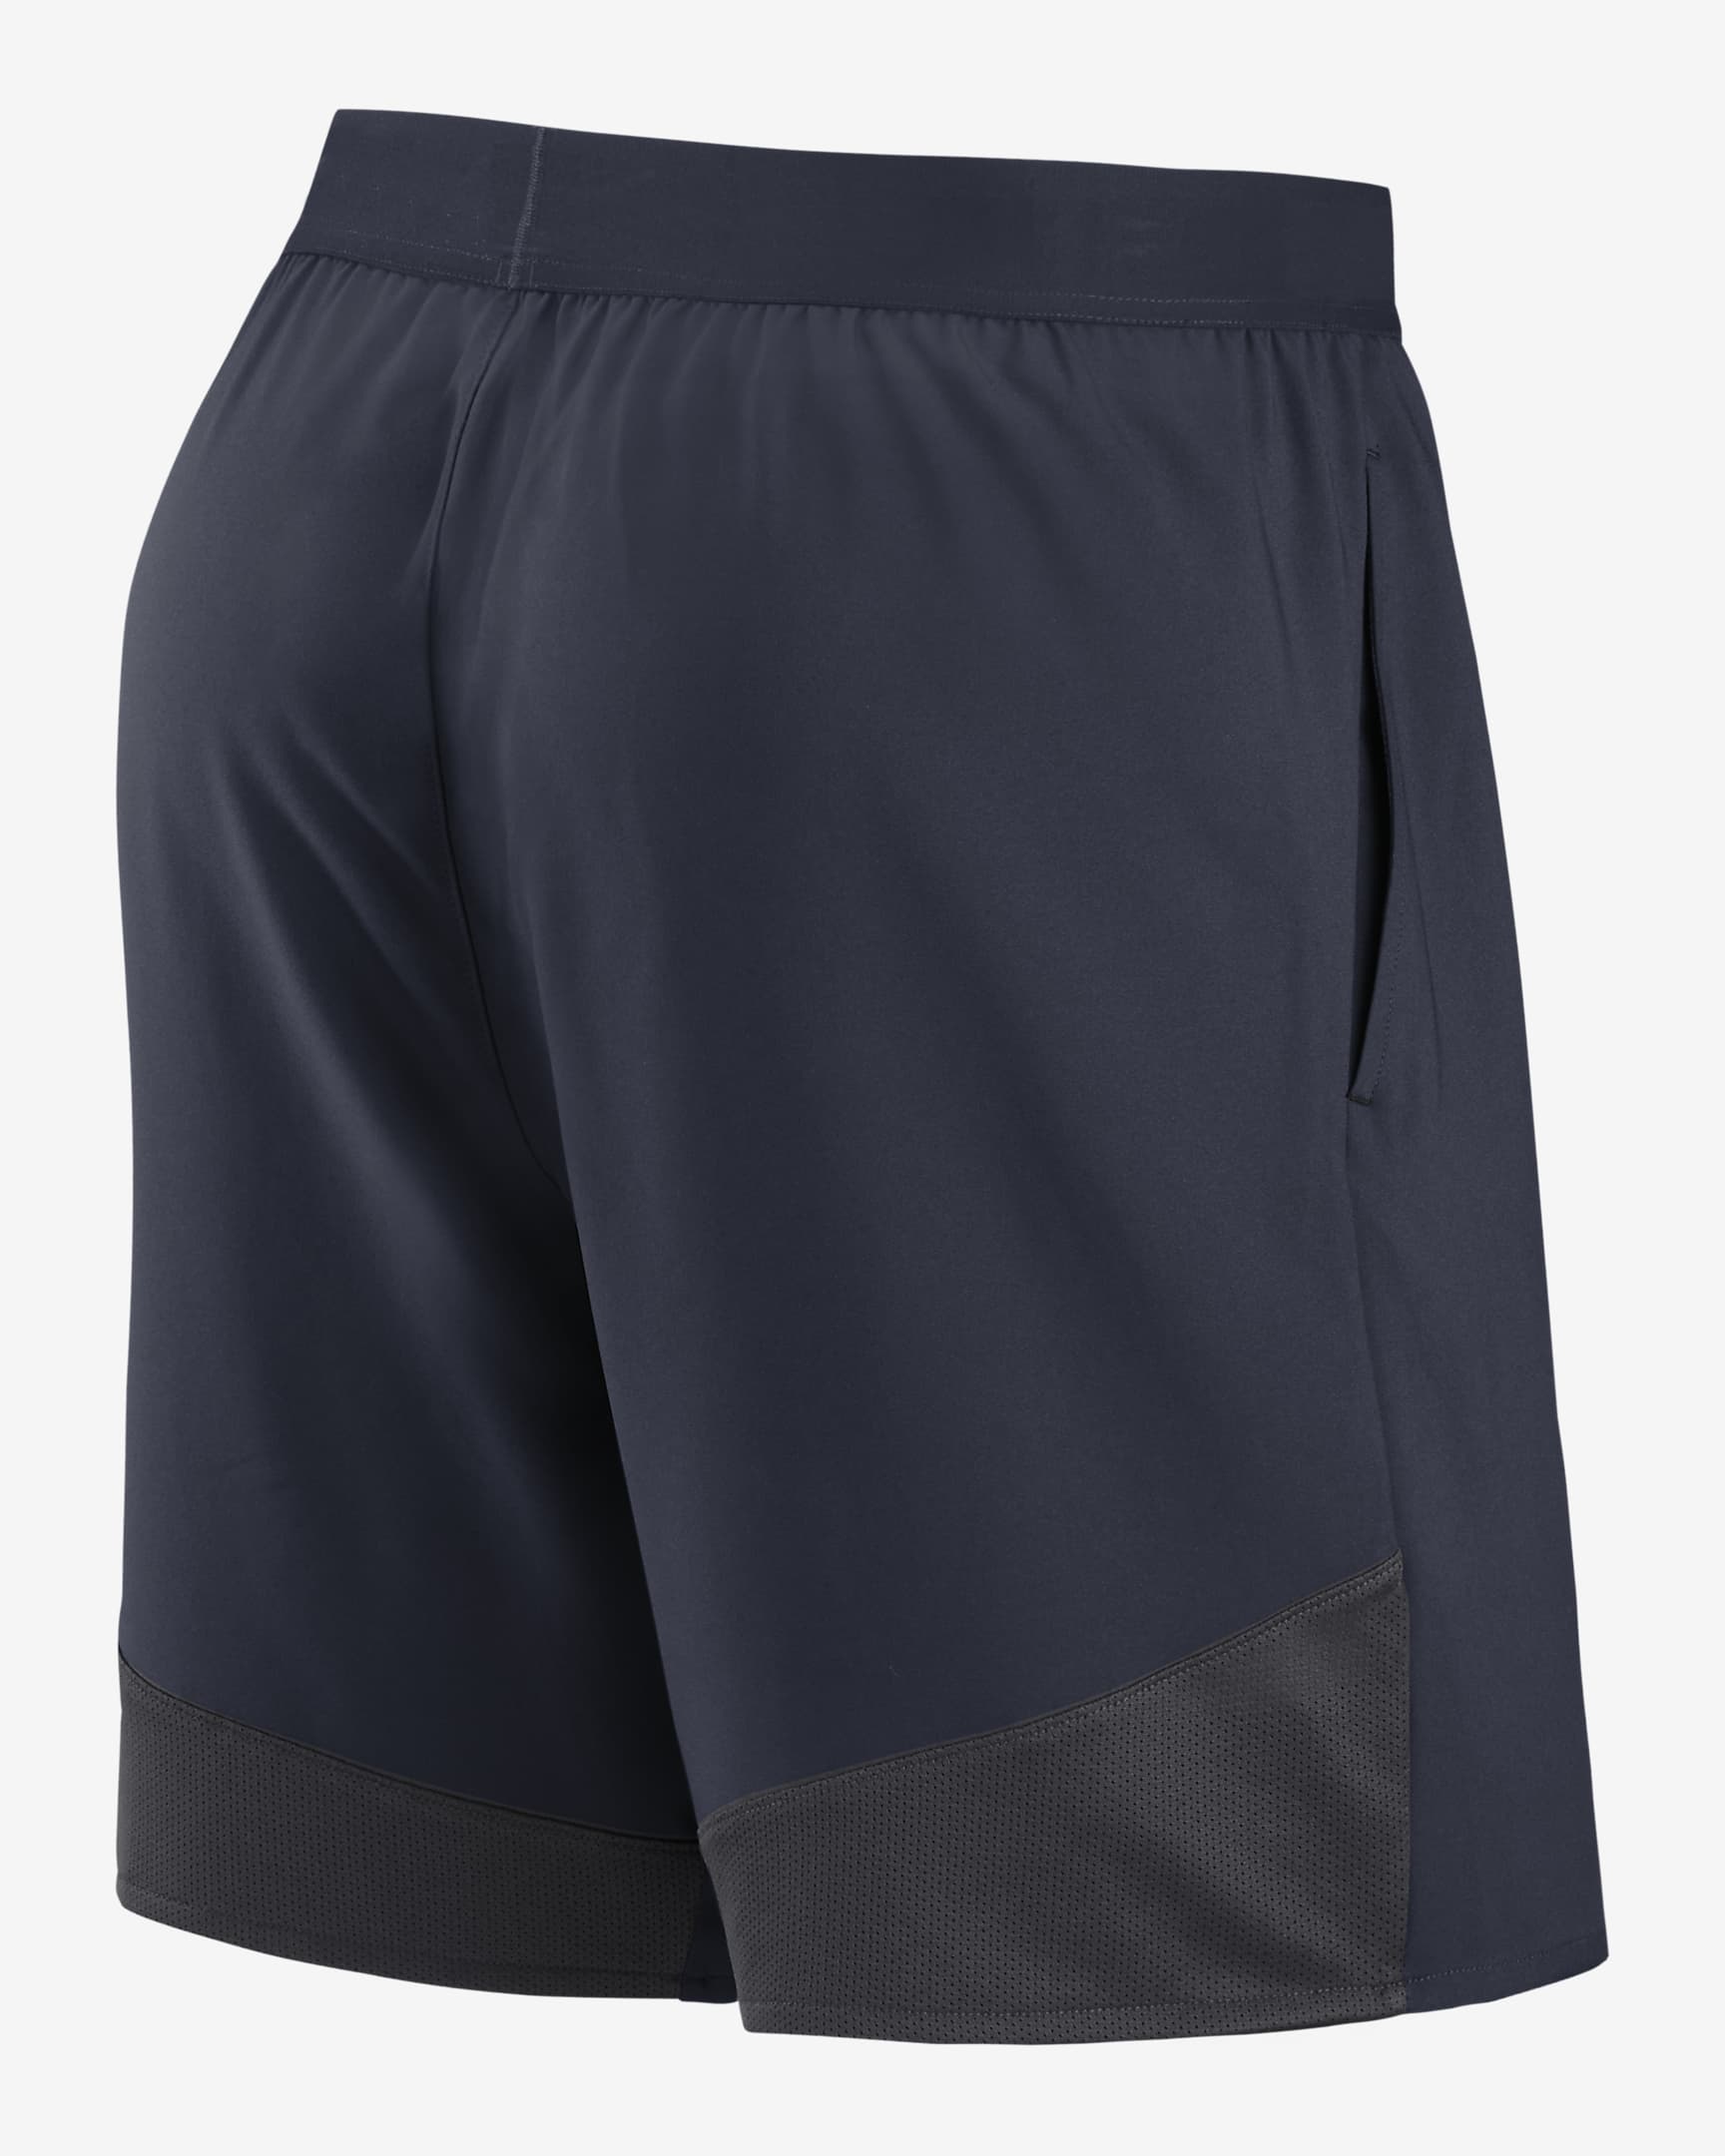 Shorts para hombre Nike Dri-FIT Stretch (NFL Chicago Bears). Nike.com